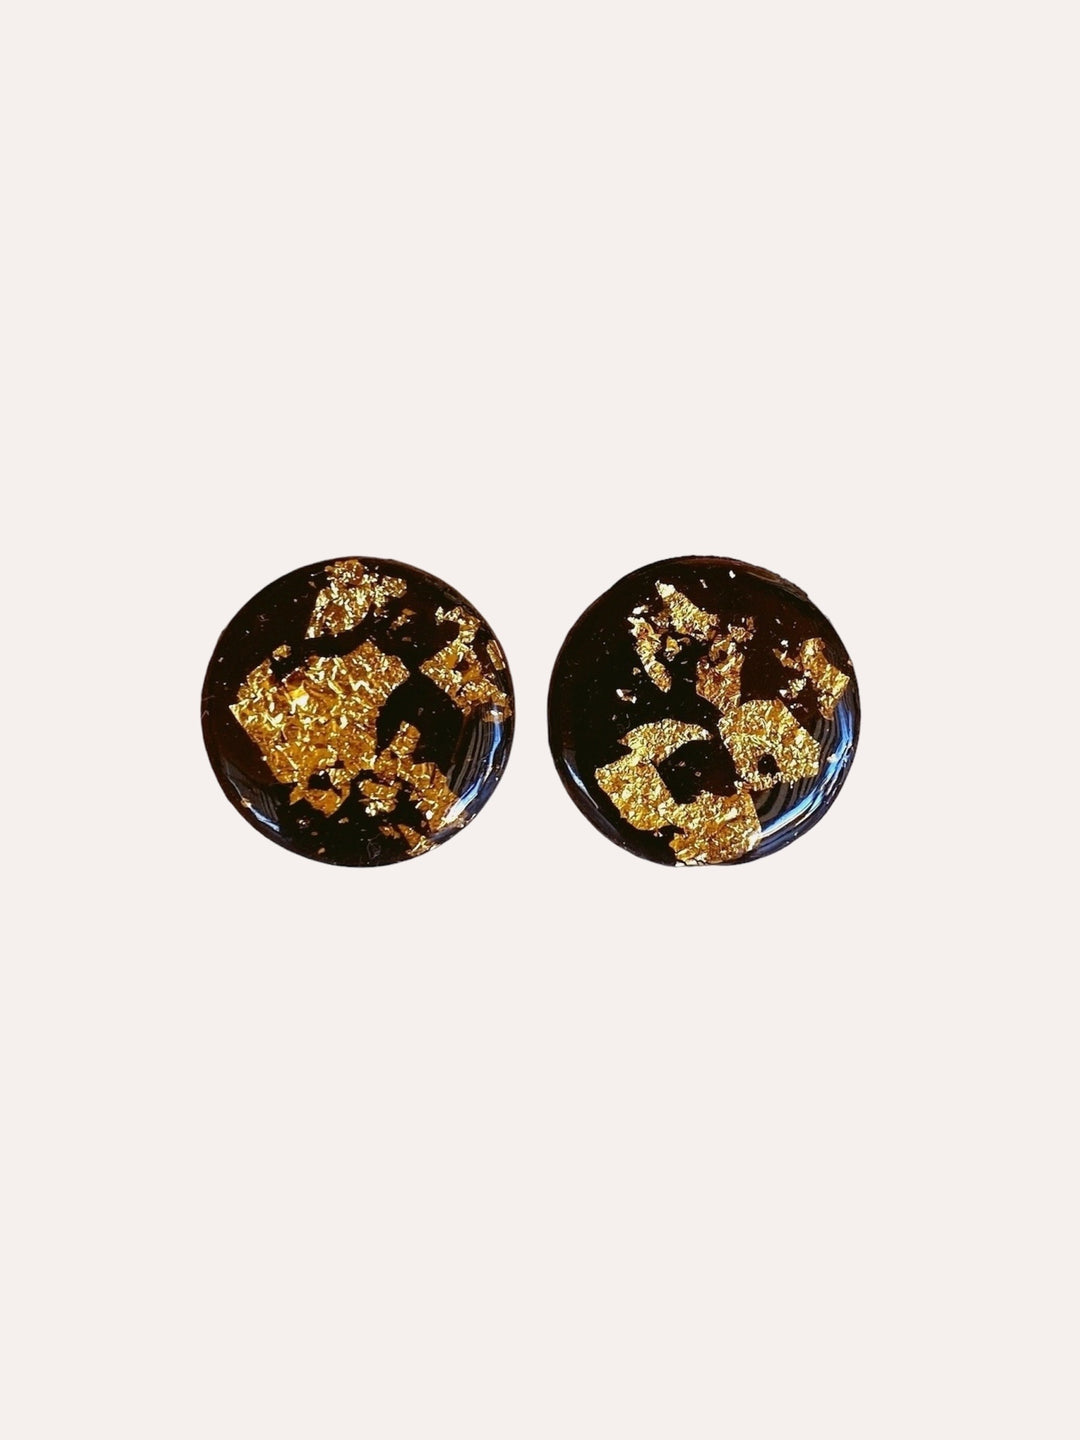 Pendientes boton Viena 25 mm Gold Shine negro - SIMBARU - Pendientes en arcilla polimerica